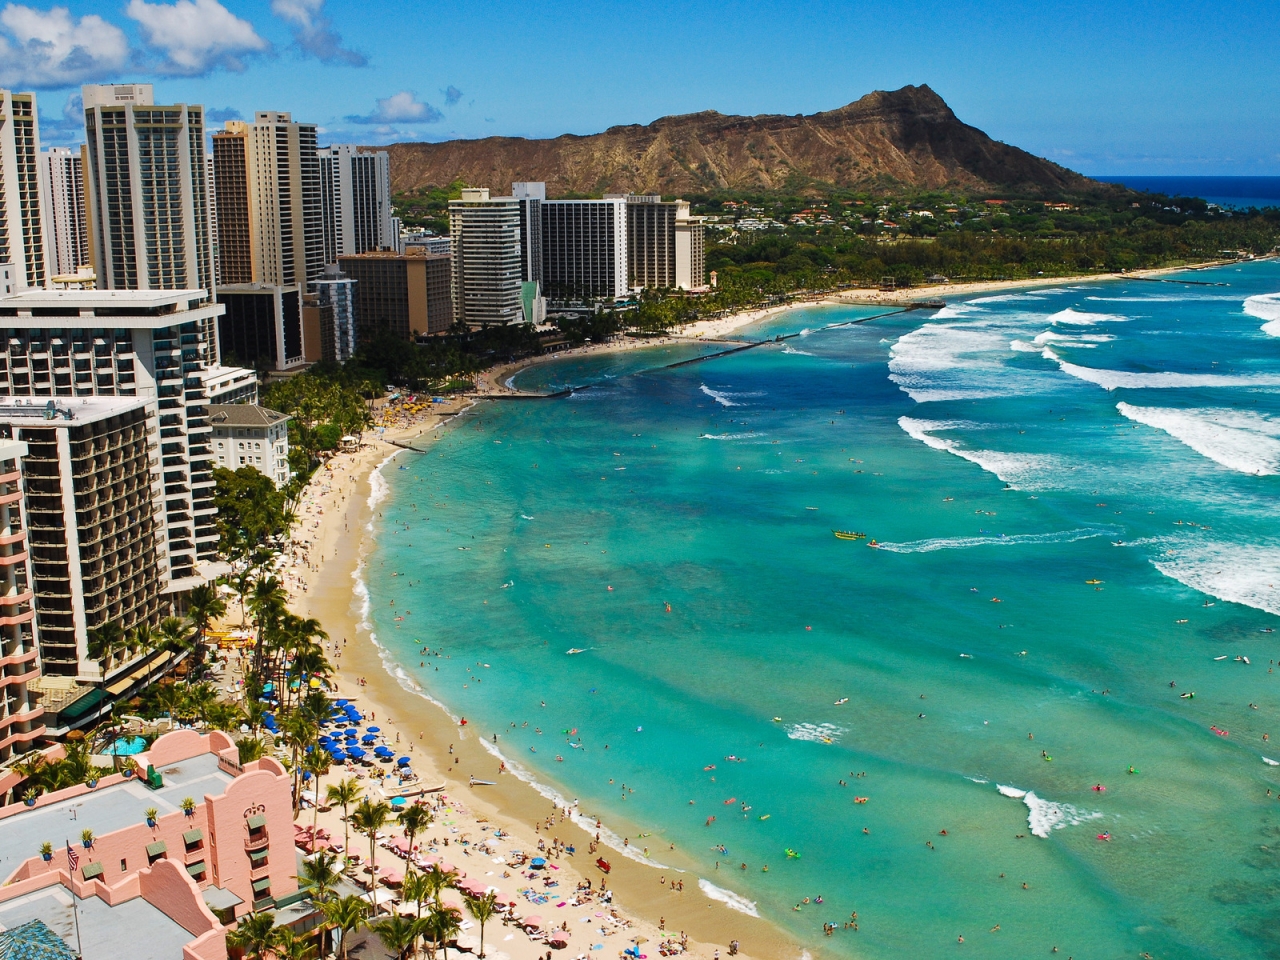 Waikiki Beach Hawaii, for 1280 x 960 resolution